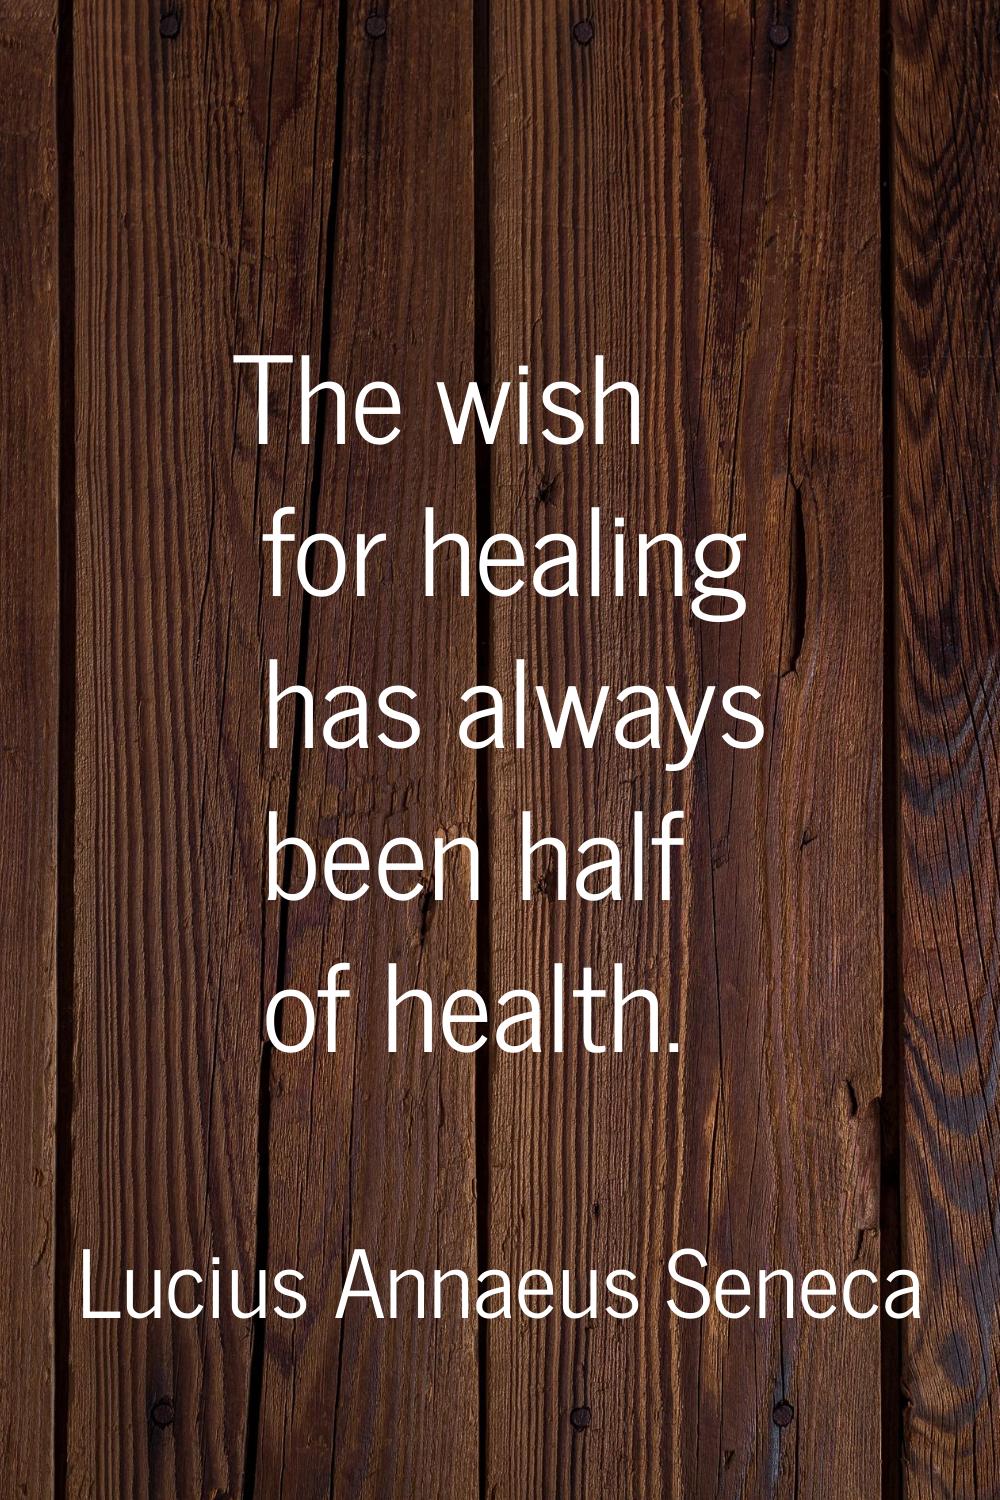 The wish for healing has always been half of health.